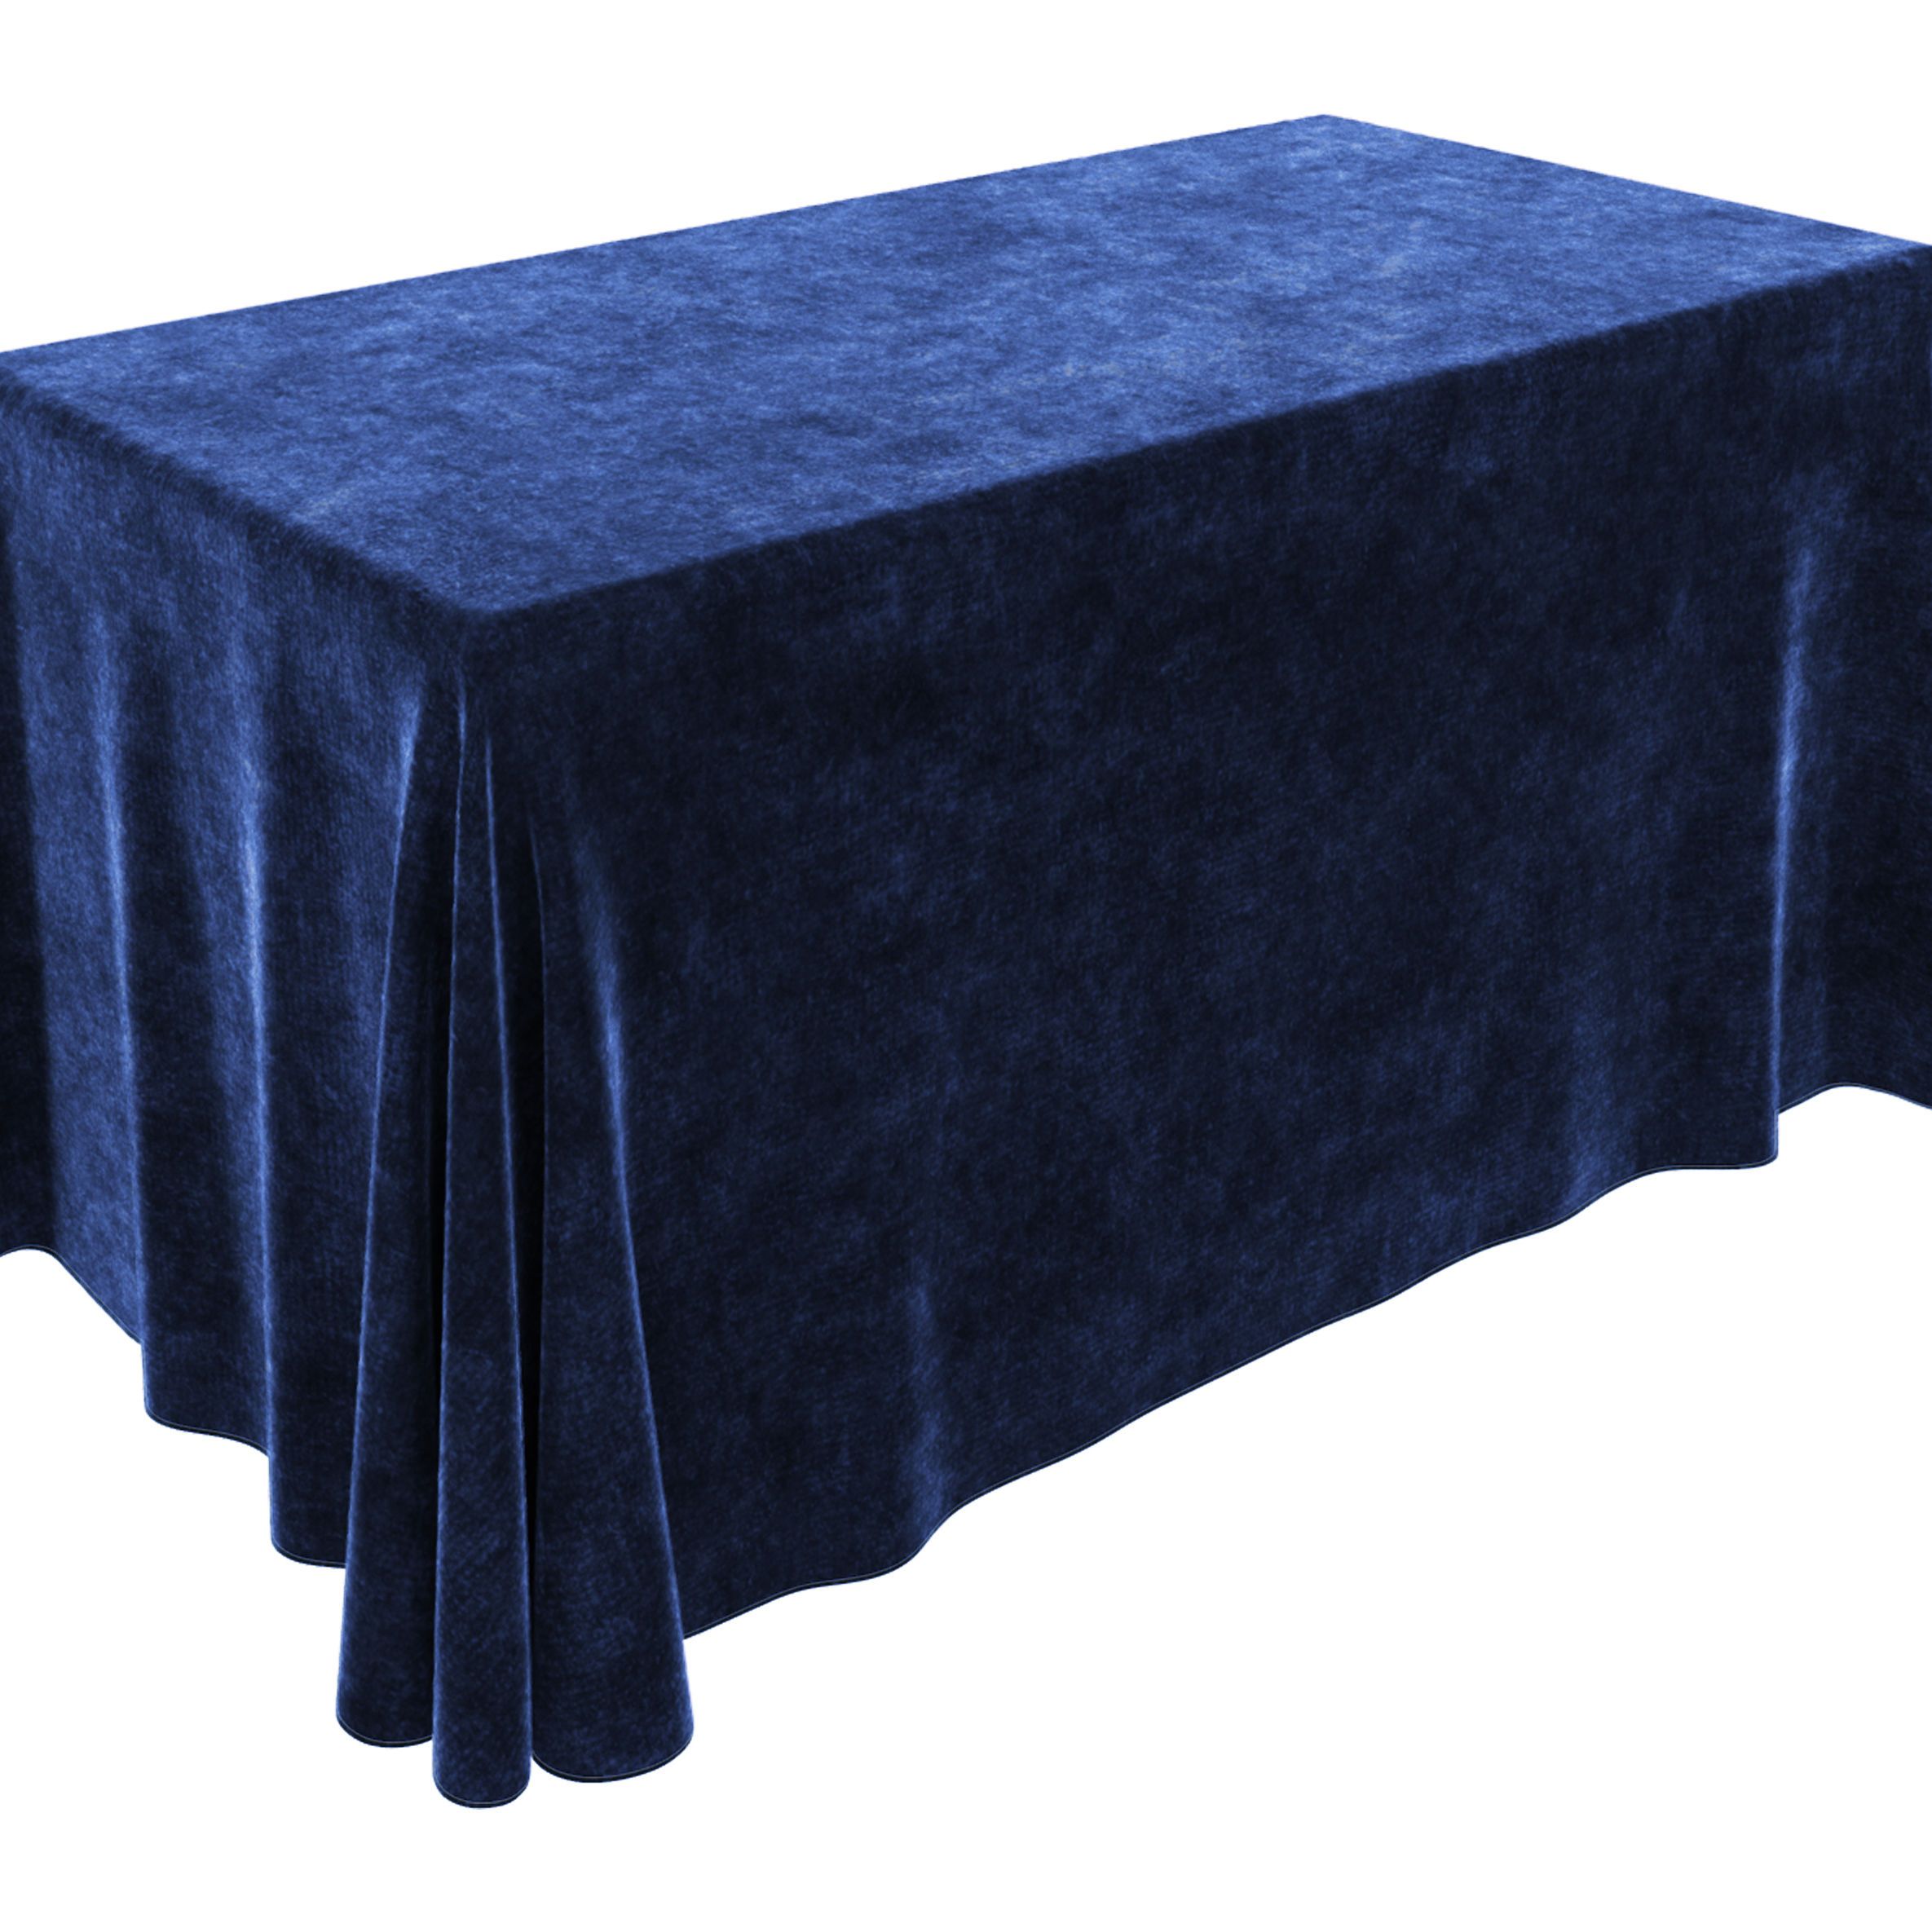 синяя скатерть на стол